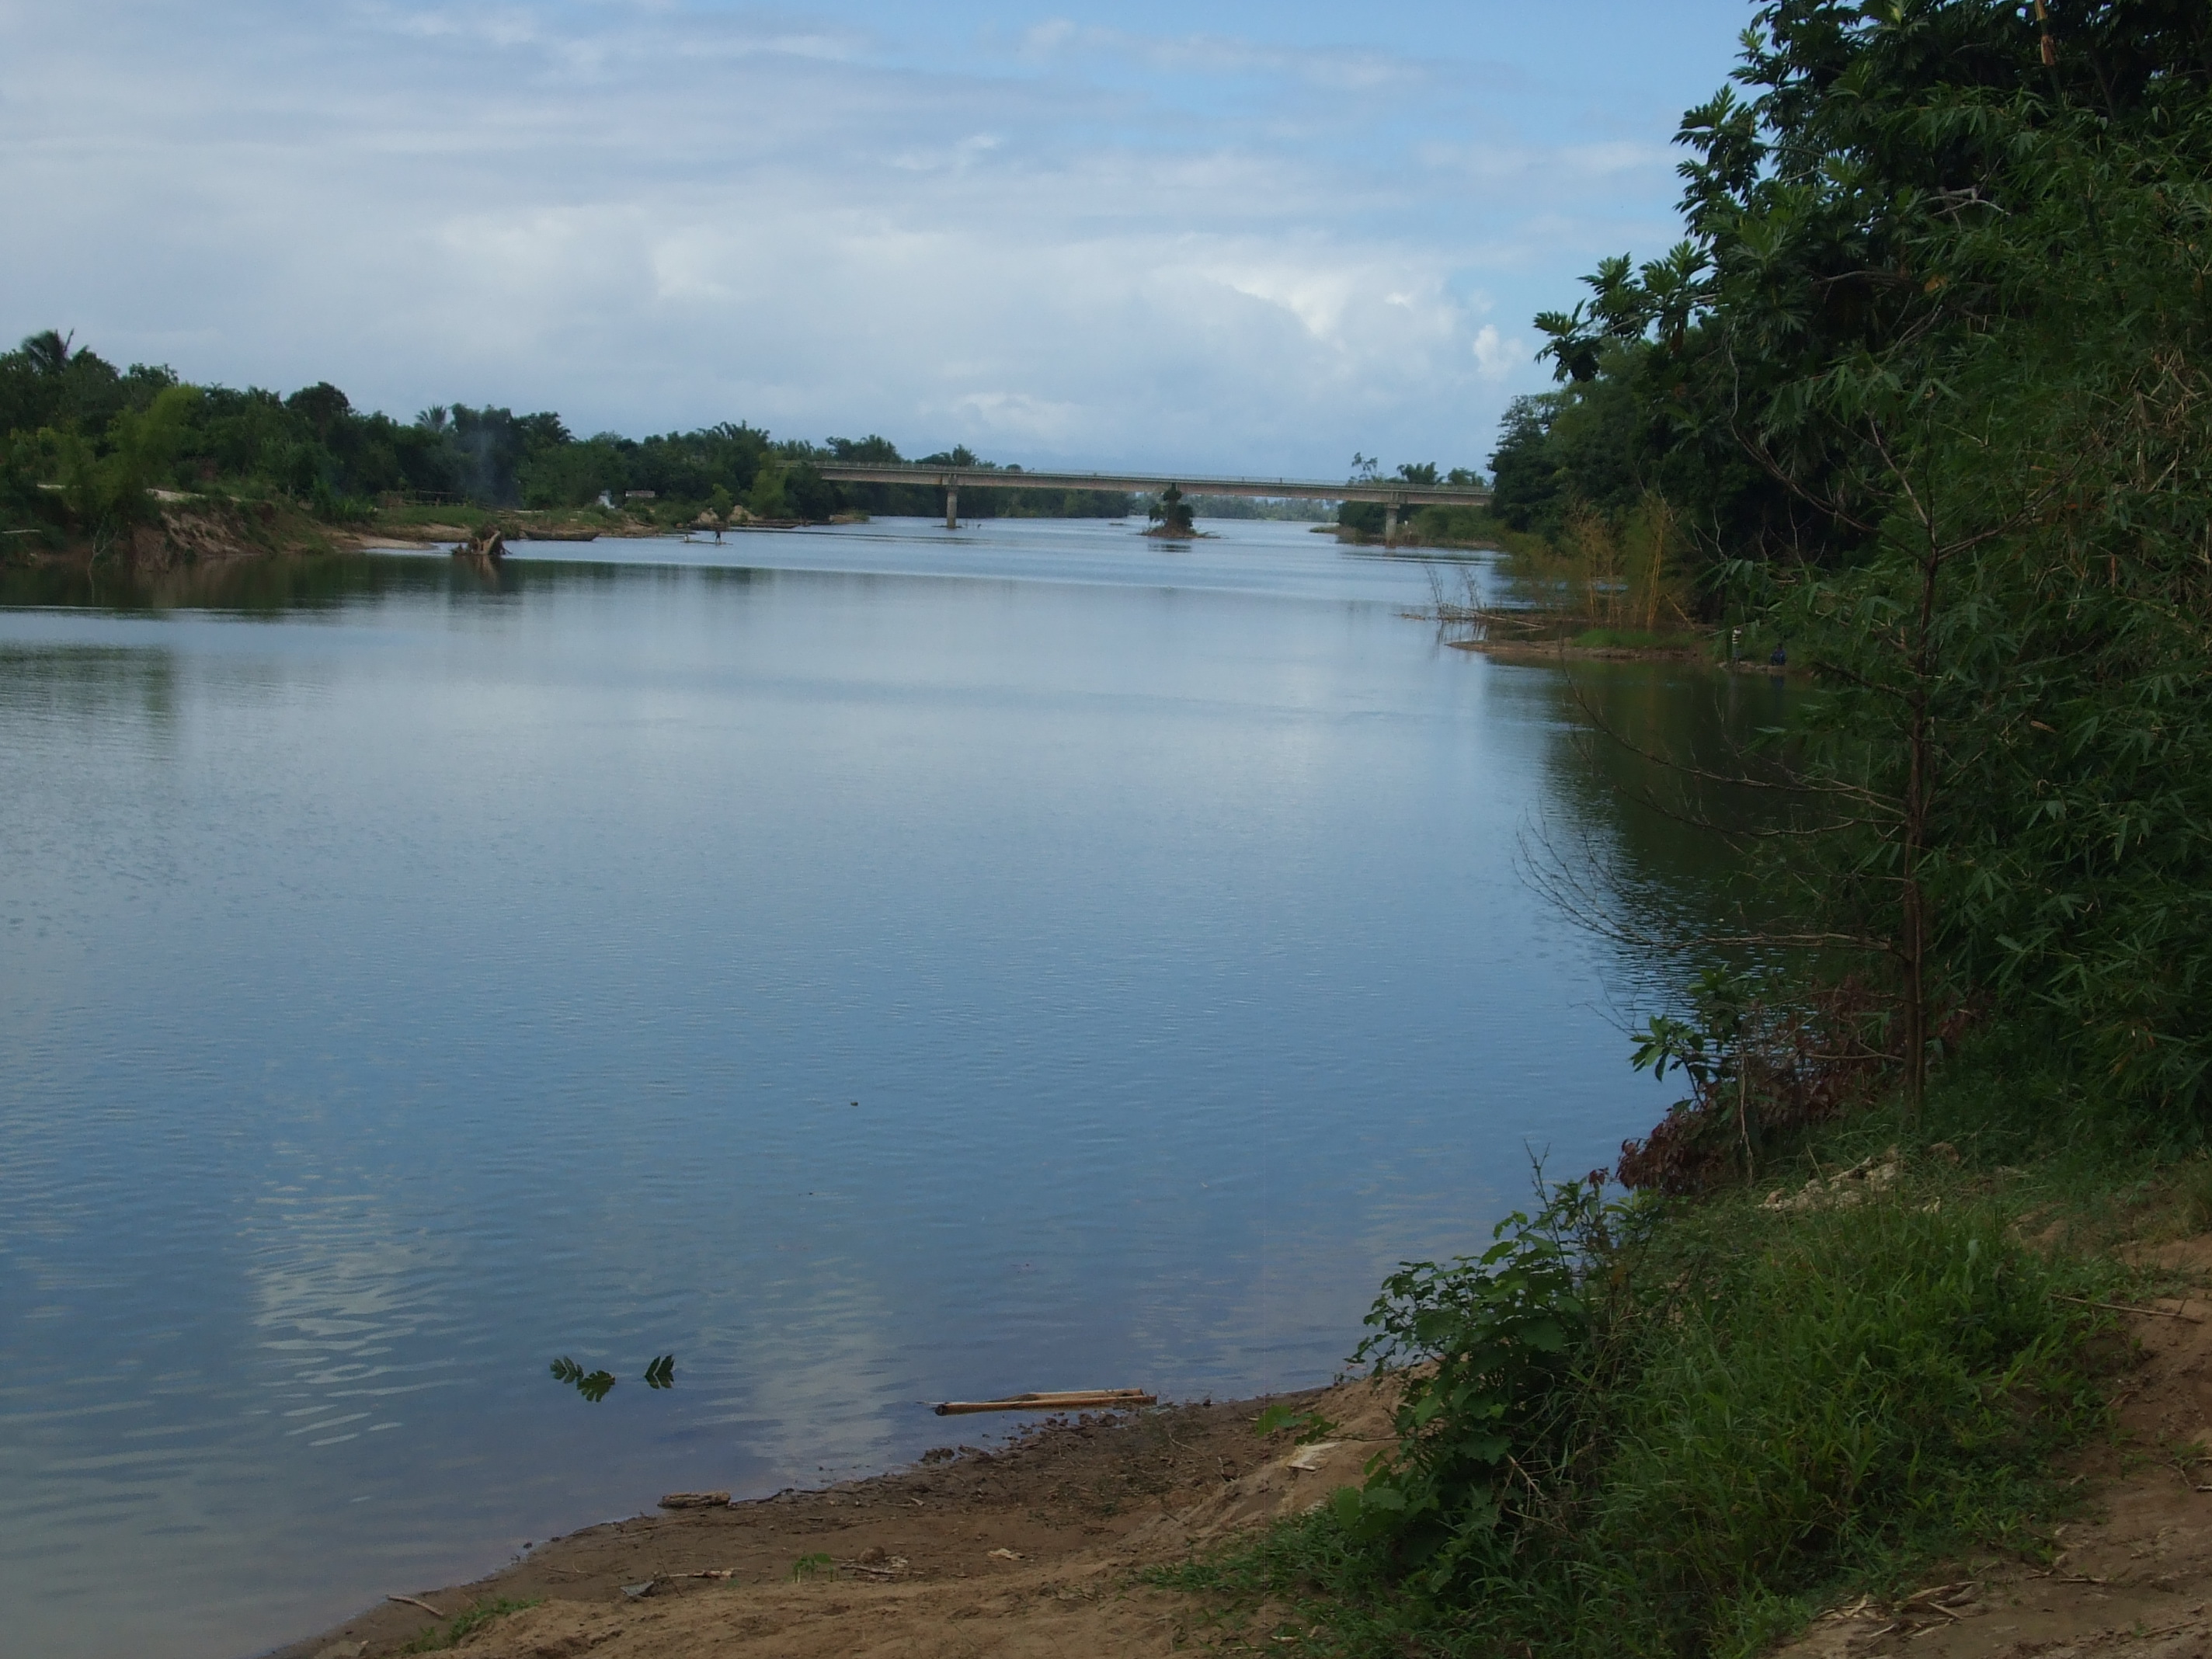 File:Le fleuve Ivoloina et le pont d'Ivoloina.jpg - Wikipedia